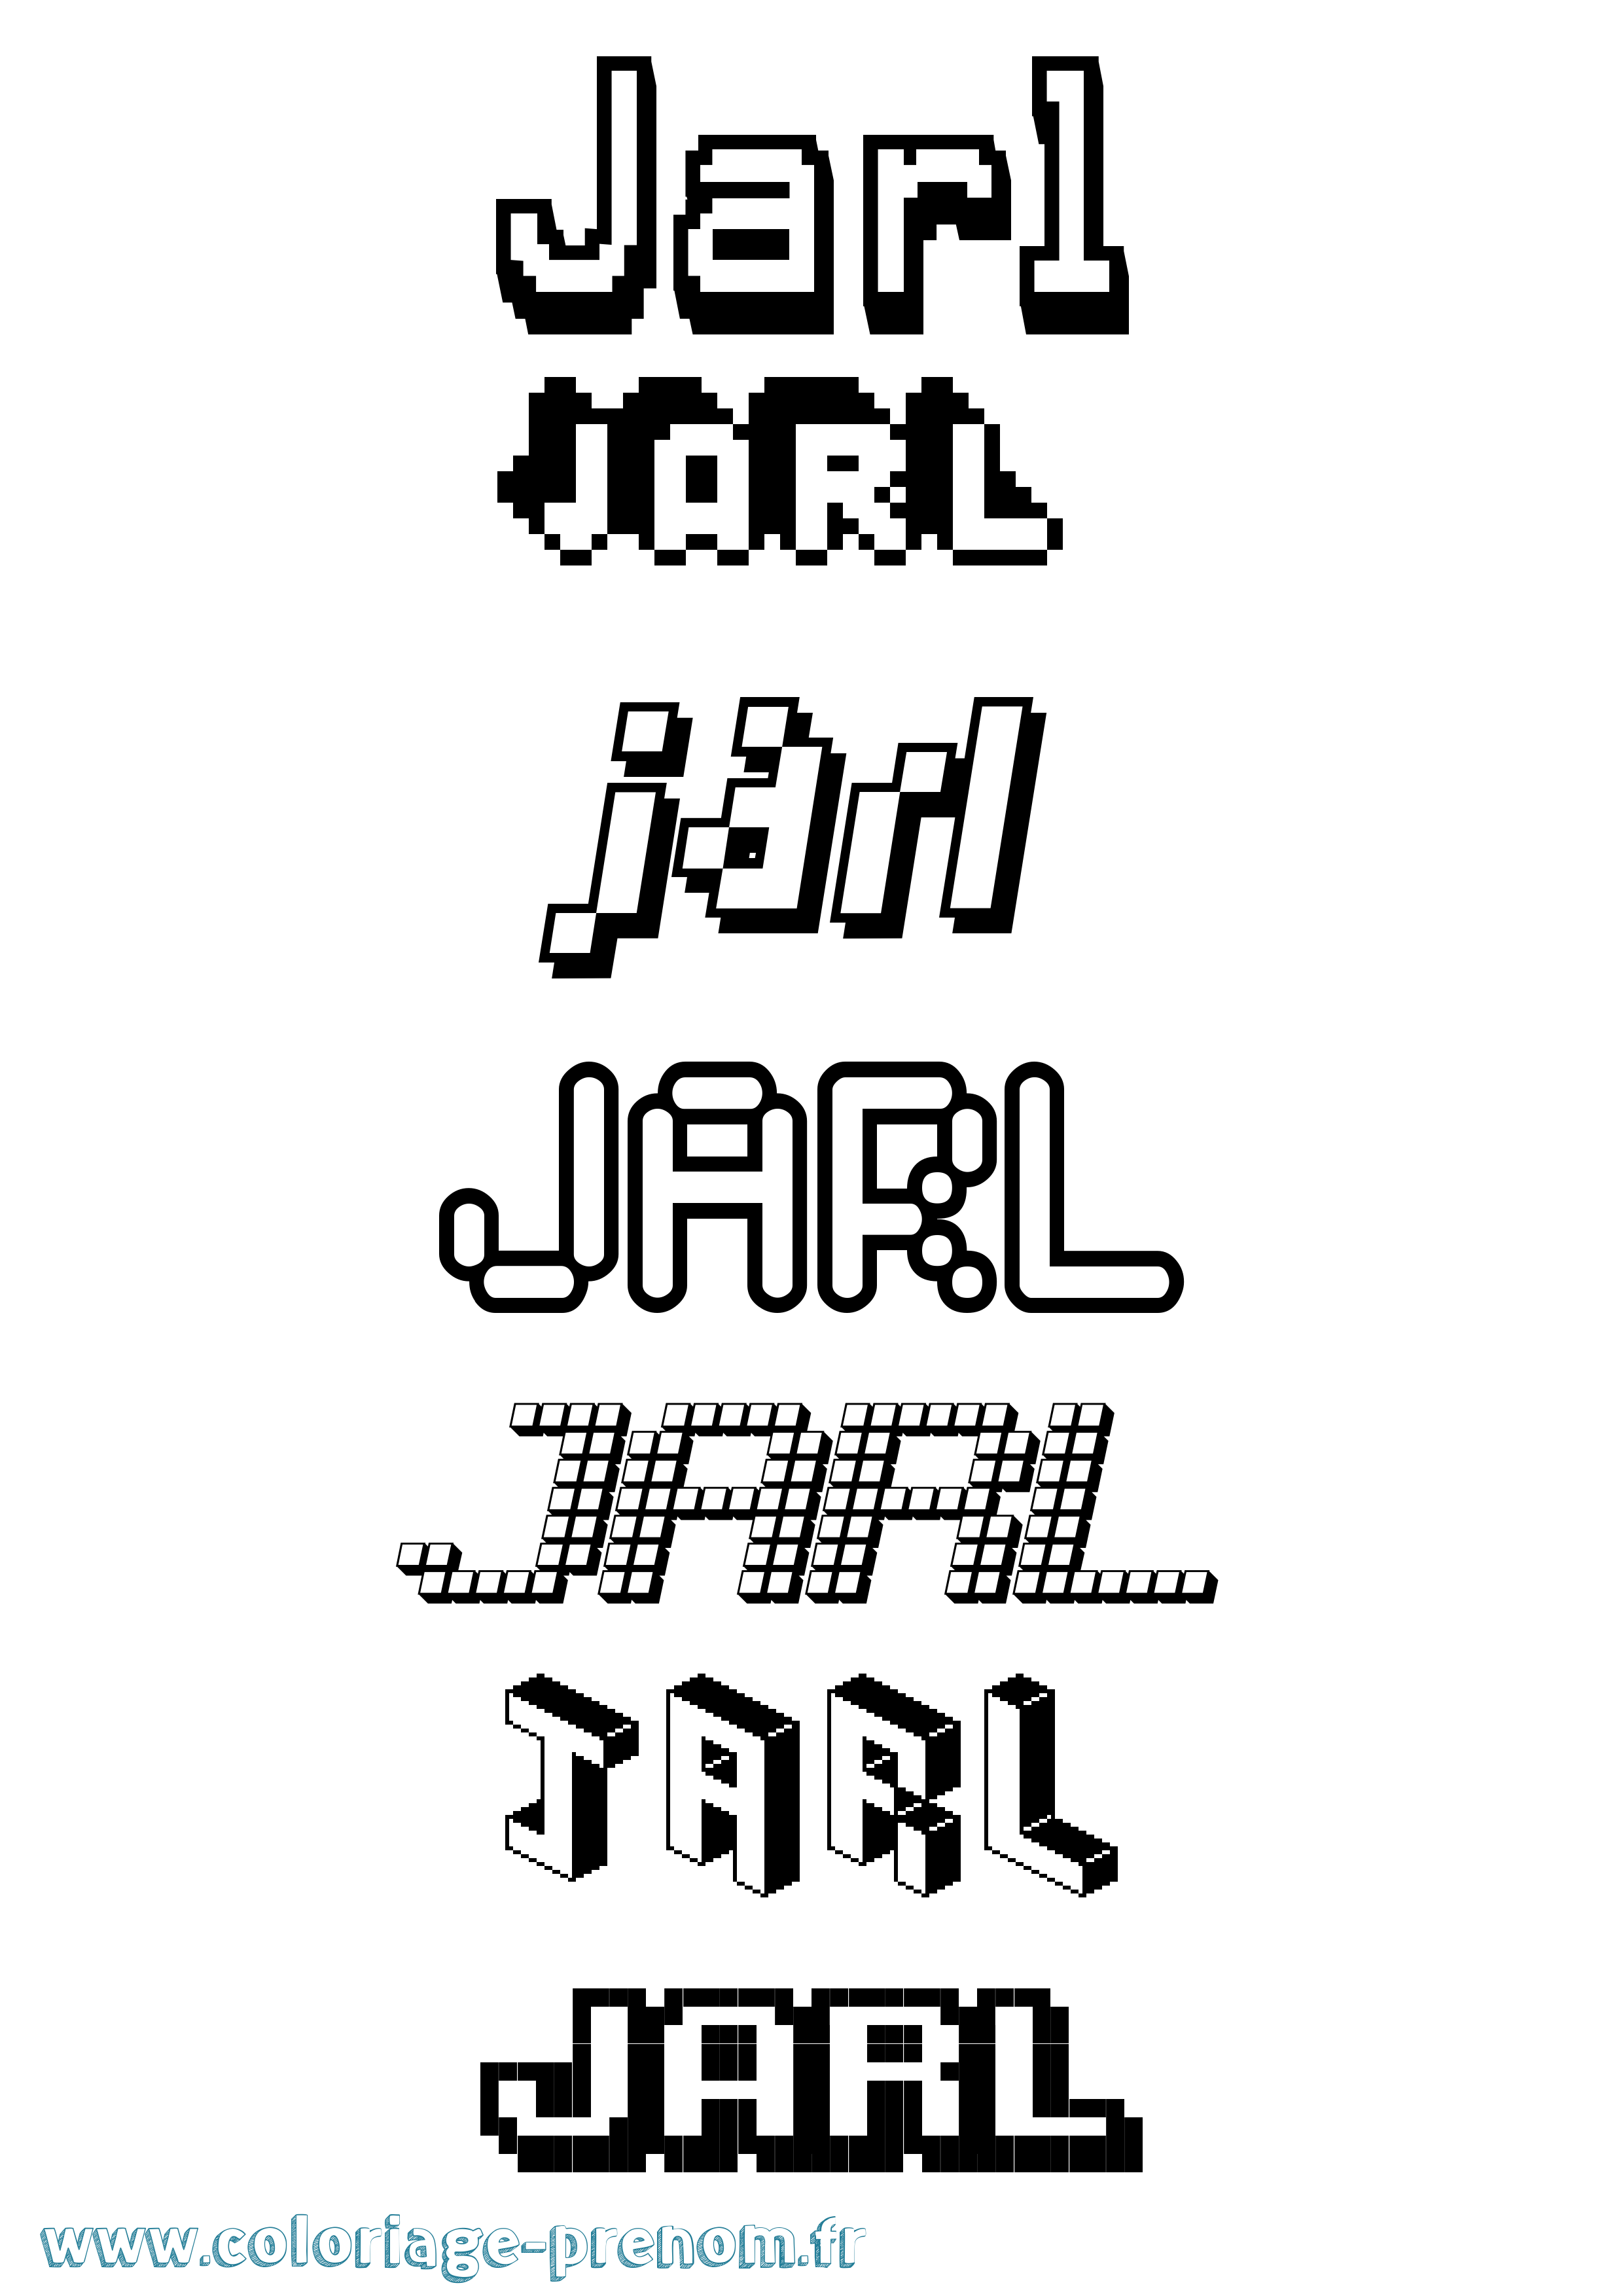 Coloriage prénom Jarl Pixel